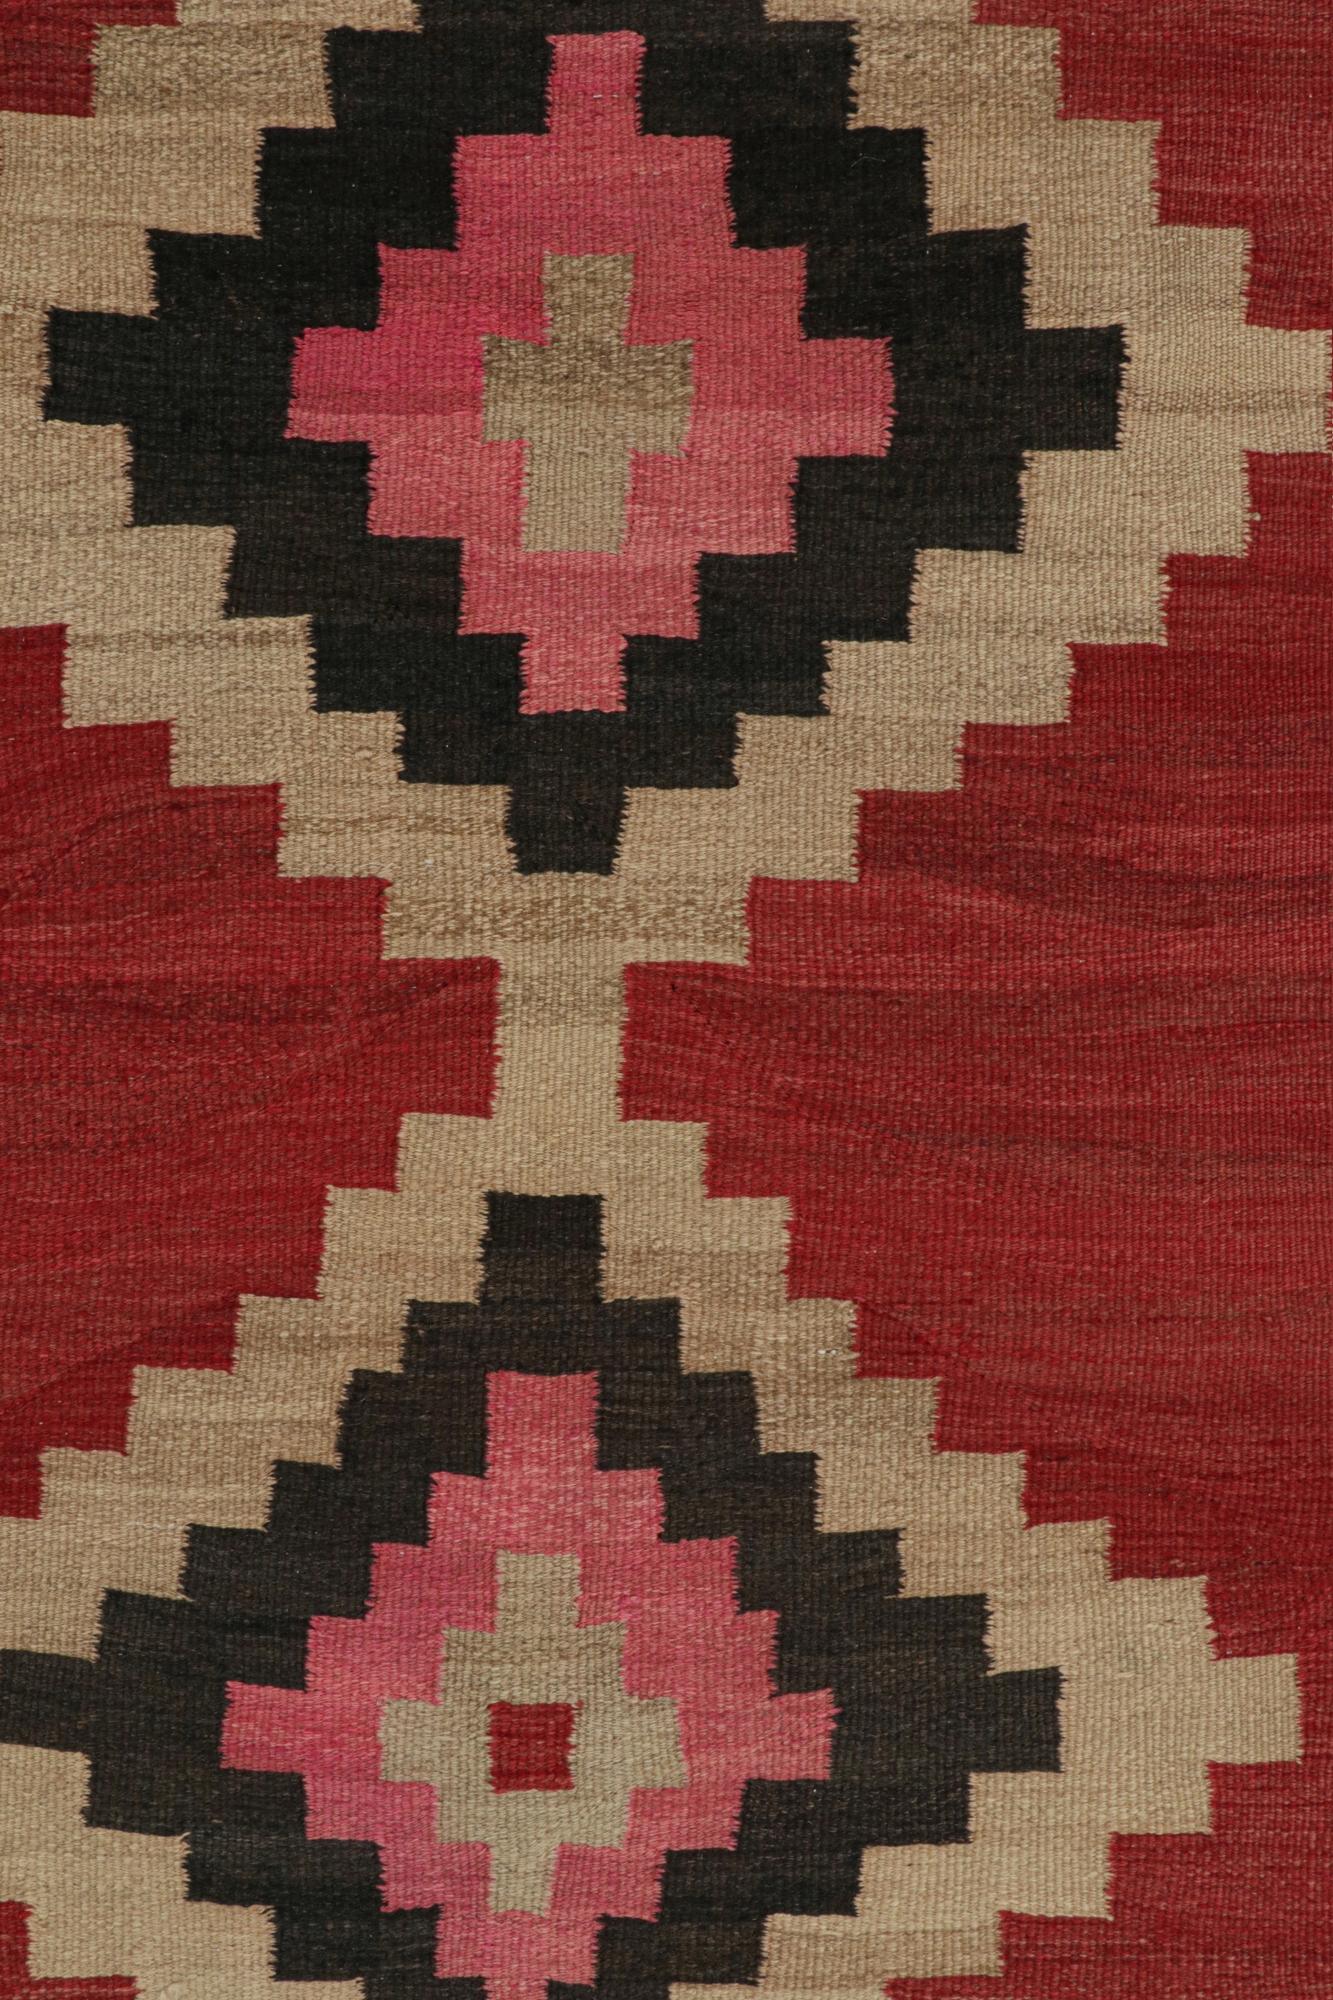 Tribal Vintage Shahsavan Persian Kilim in Red, Beige & Black Patterns by Rug & Kilim For Sale